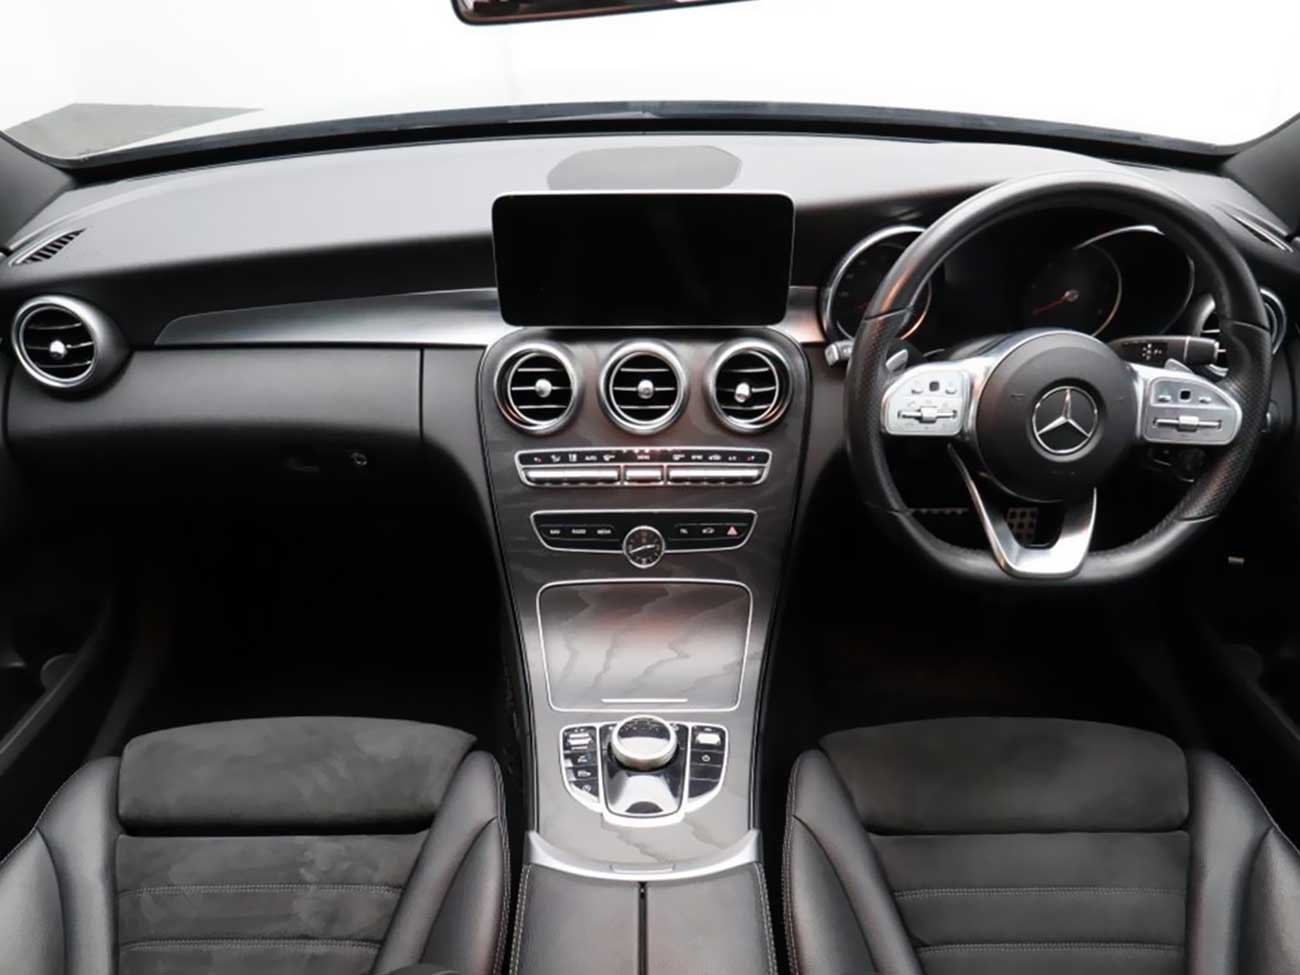 Mercedes-Benz C Class interior